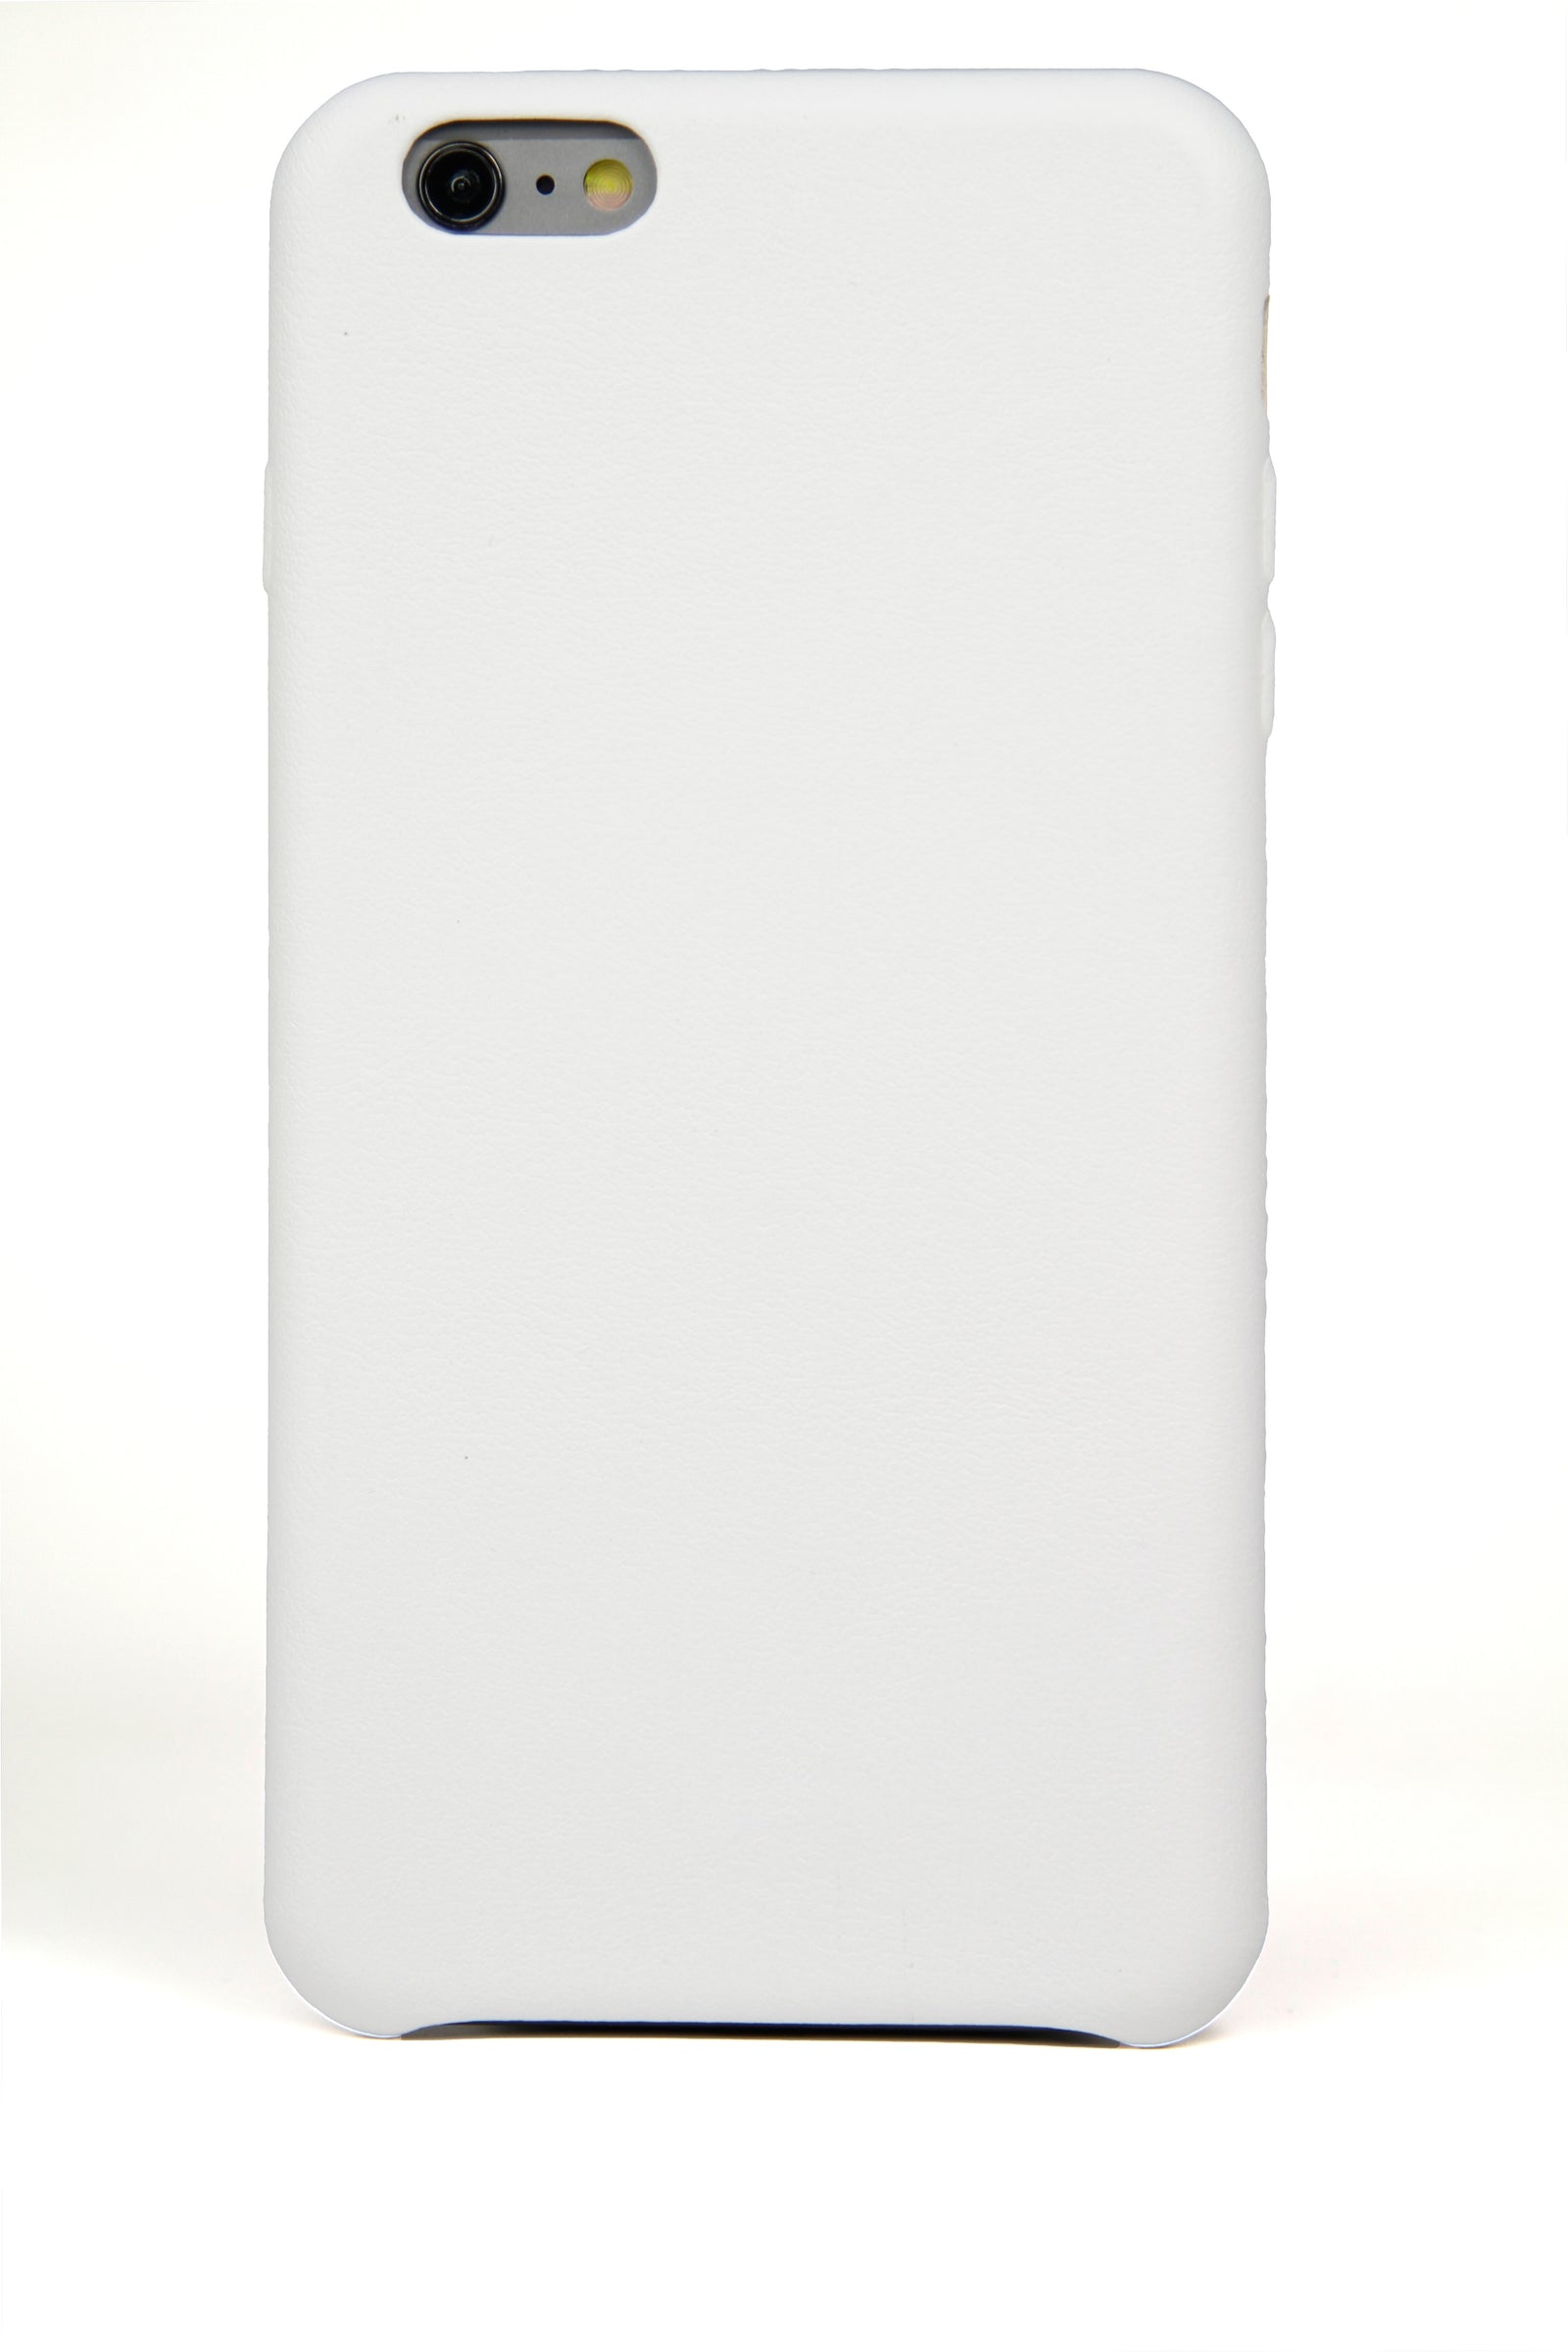 Coque iPhone 6 Plus, cuir blanc